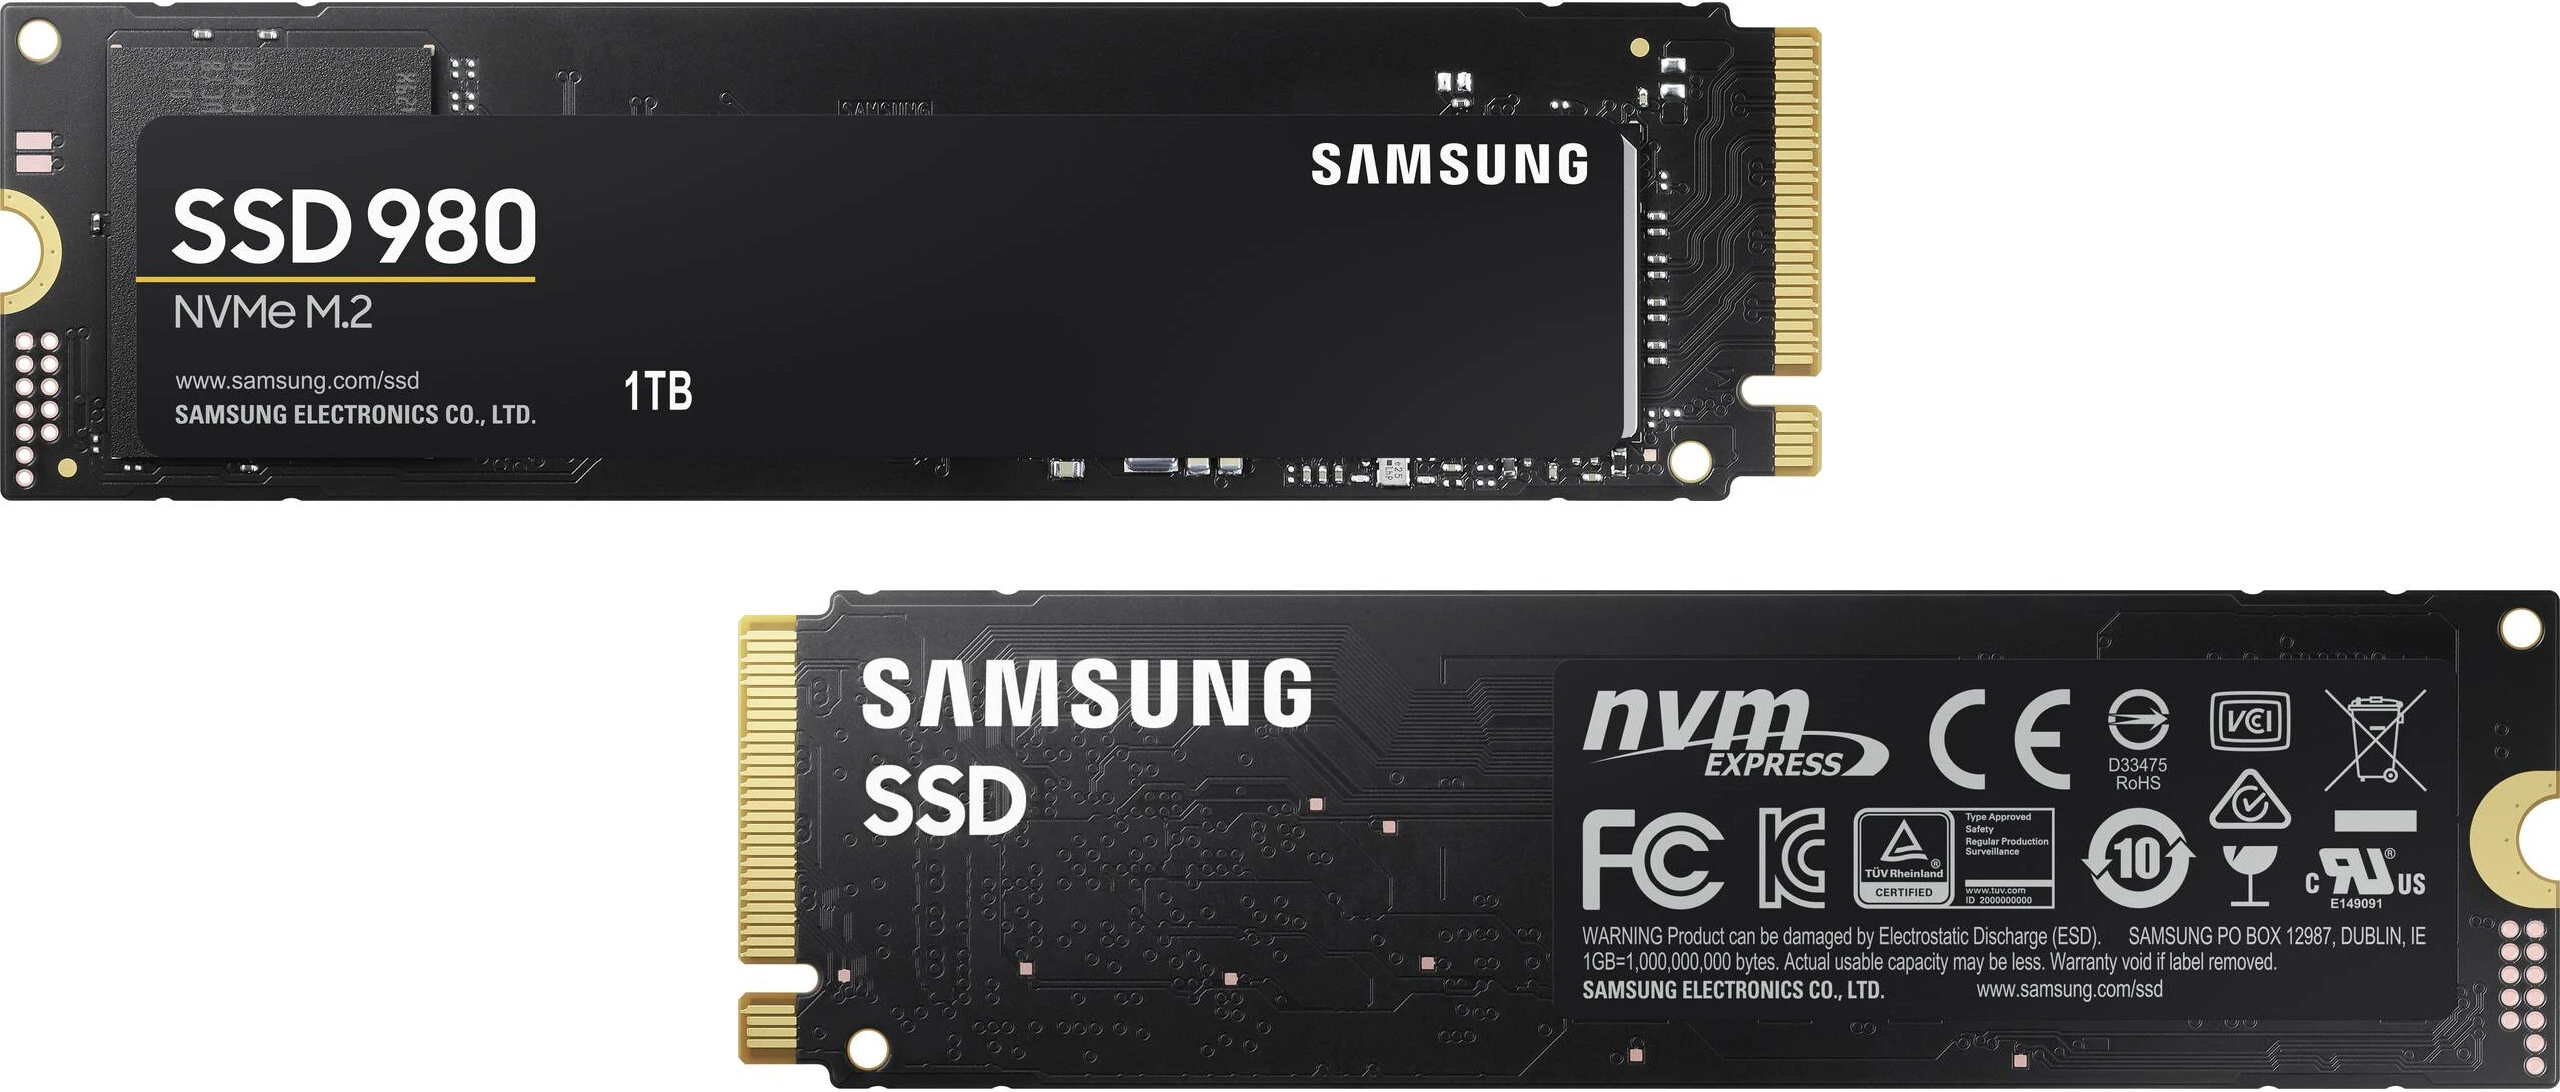 Samsung SSDs 980 fehlen DRAM und PCIe 4.0